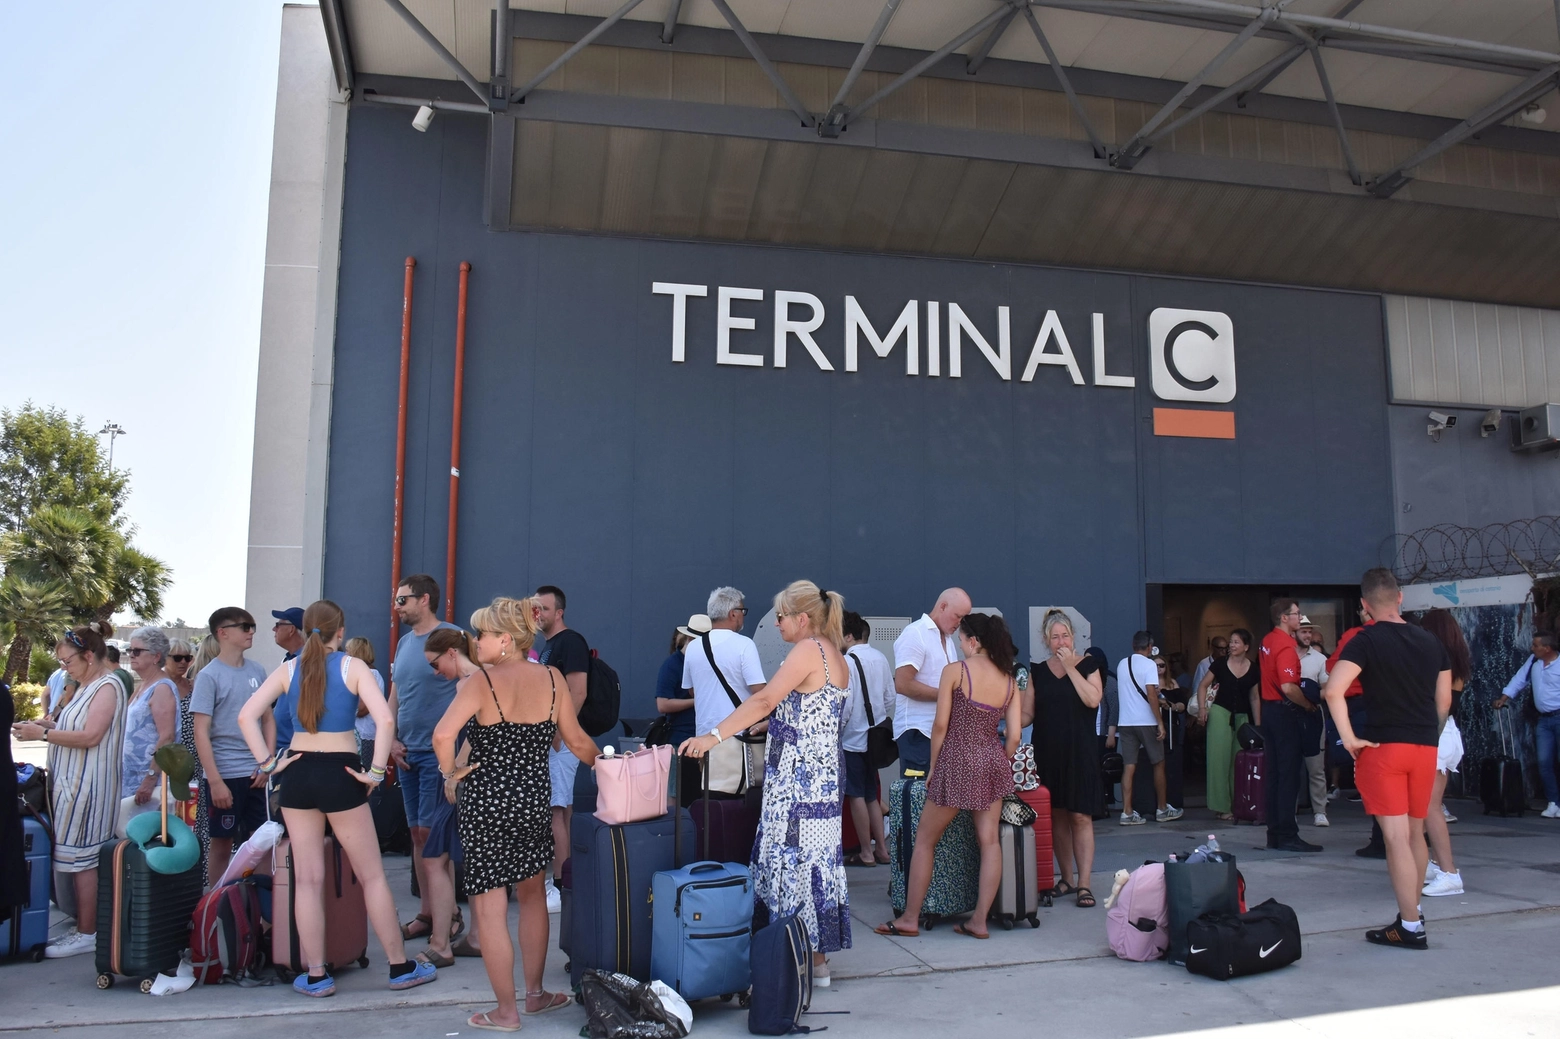 Aeroporto di Catania: da oggi pomeriggio è attiva una tensostruttura al Terminal C